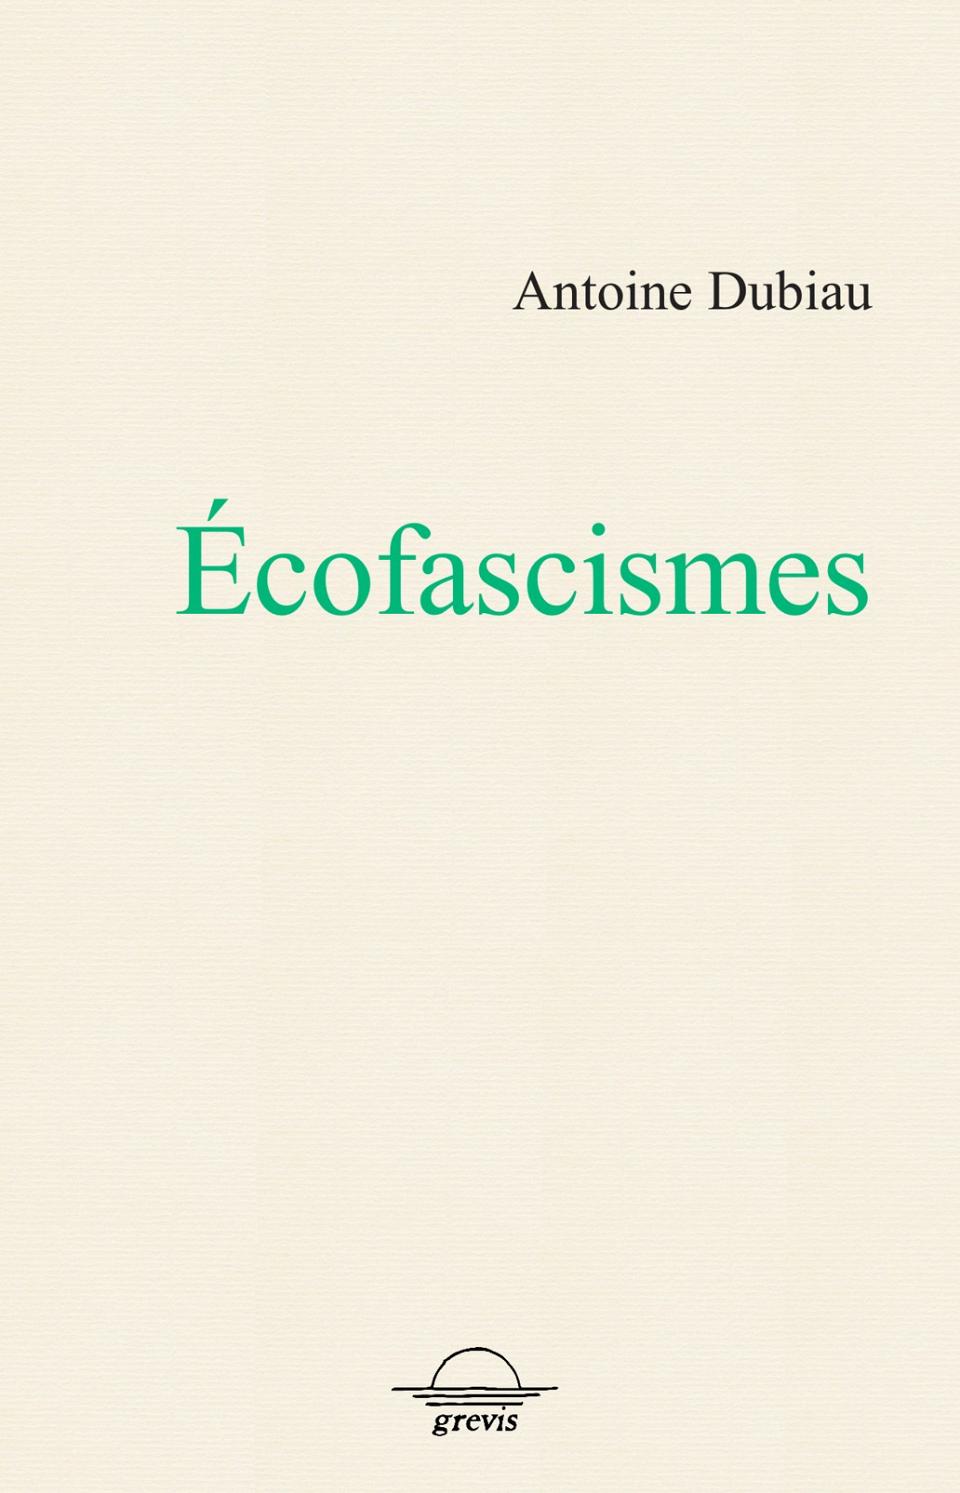 Couverture du livre d'Antoine Dubiau "Écofascismes".